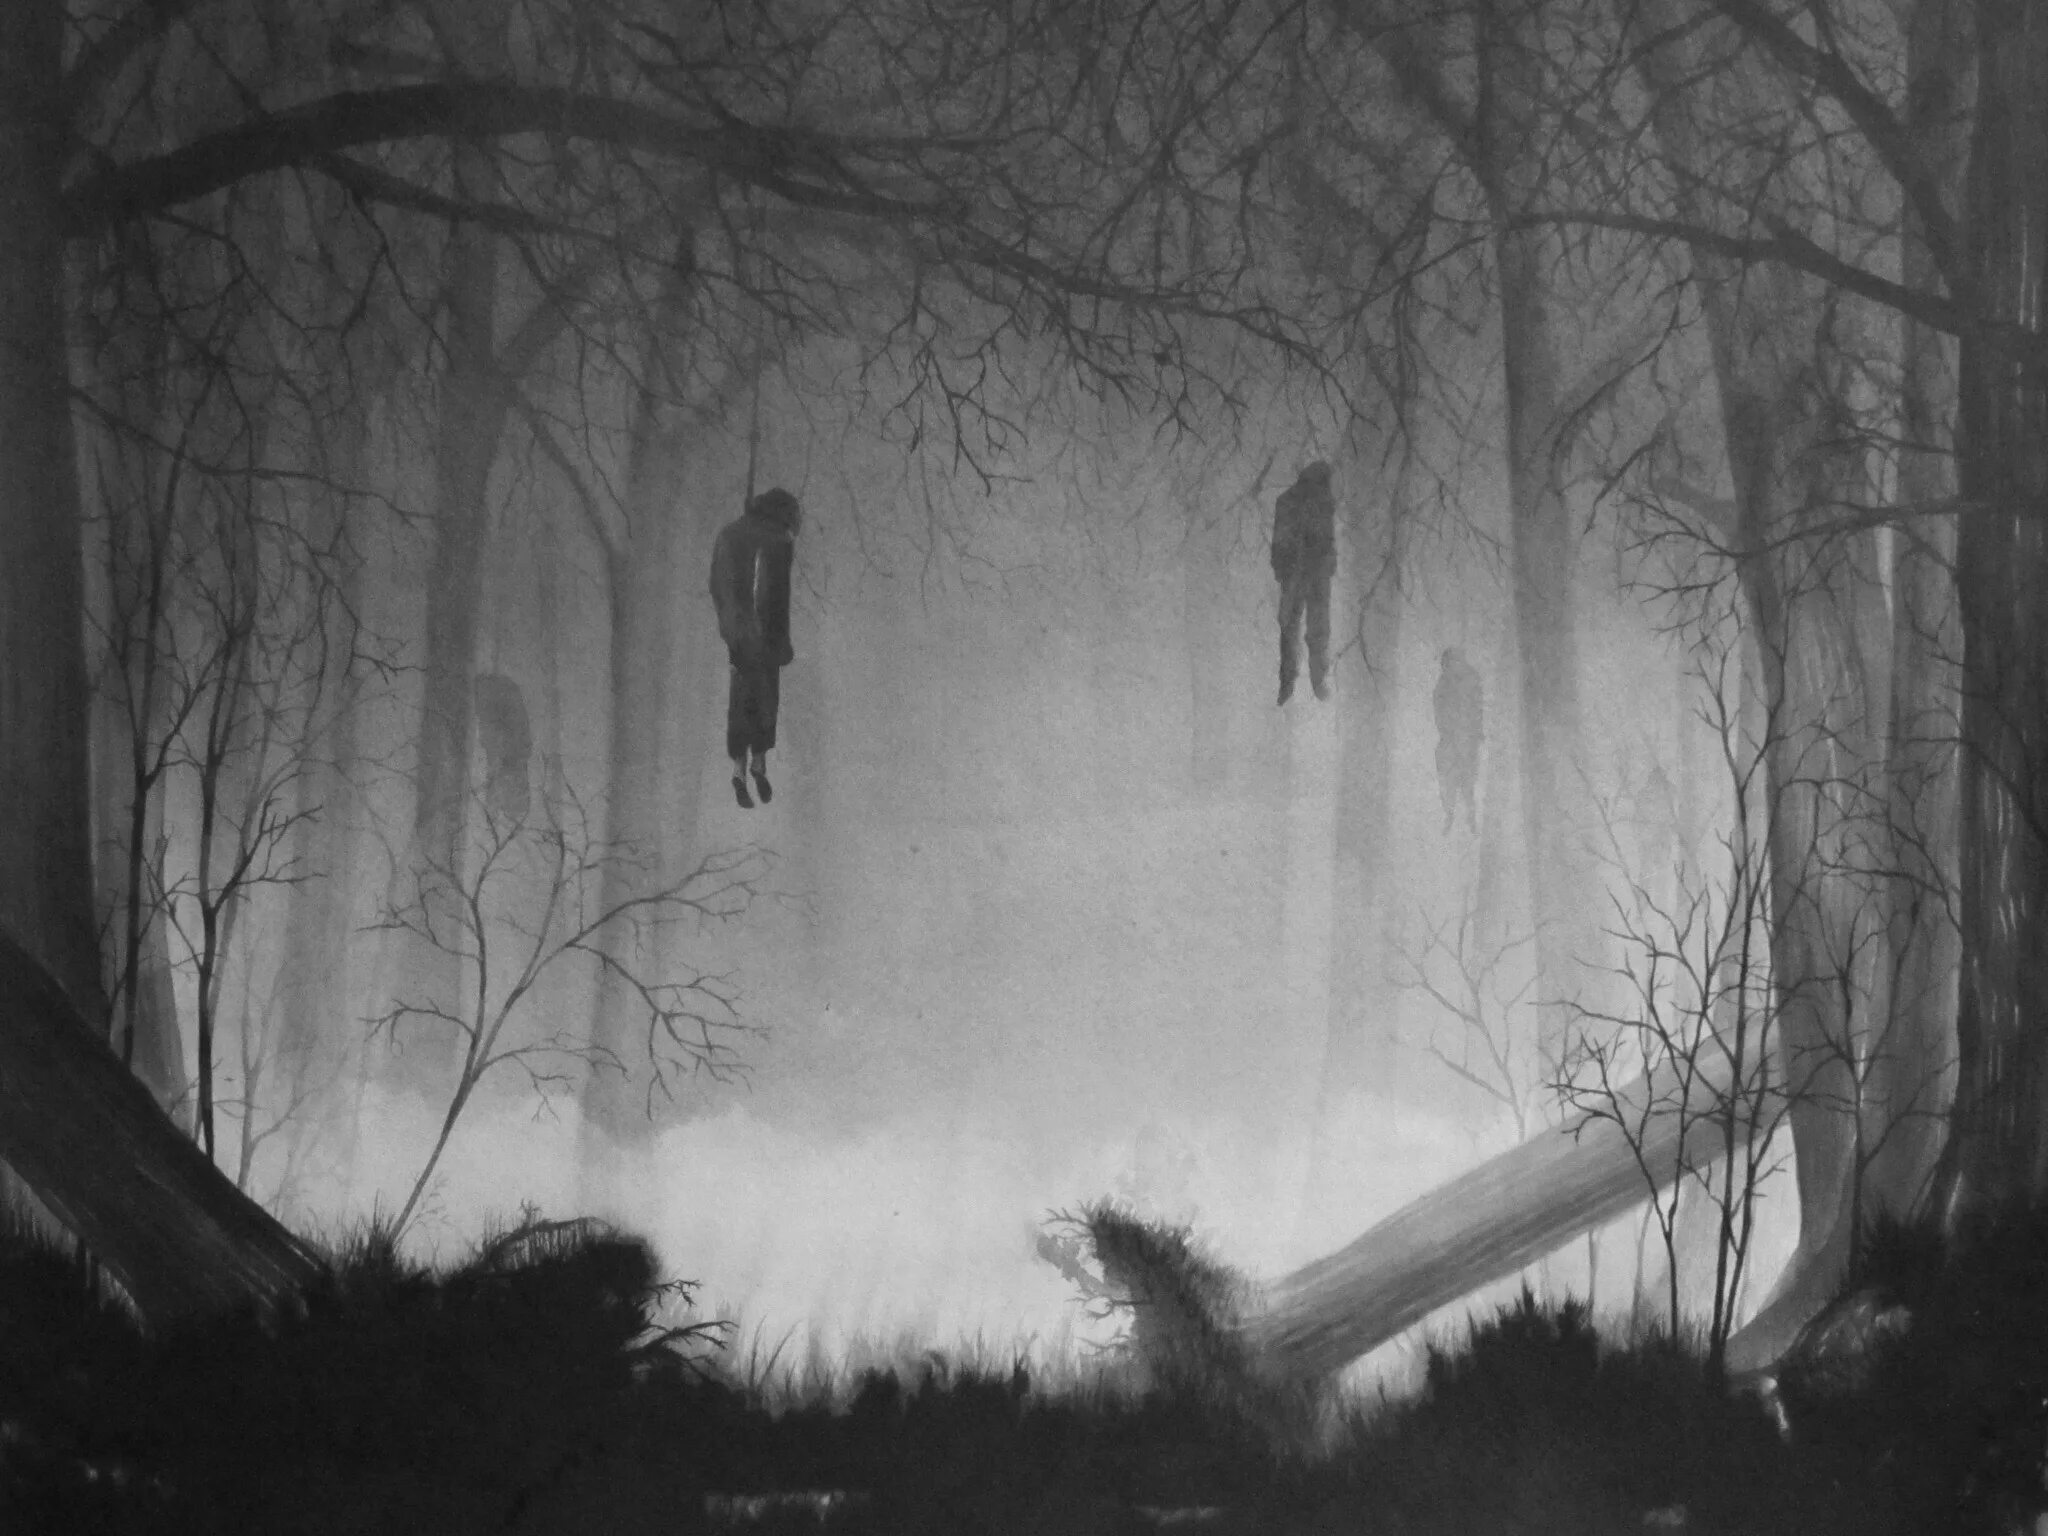 Мертвых больше чем живых. Atmospheric Black Metal лес. Depressive Suicidal Black Metal смерть. DSBM лес. Призрак в тумане.